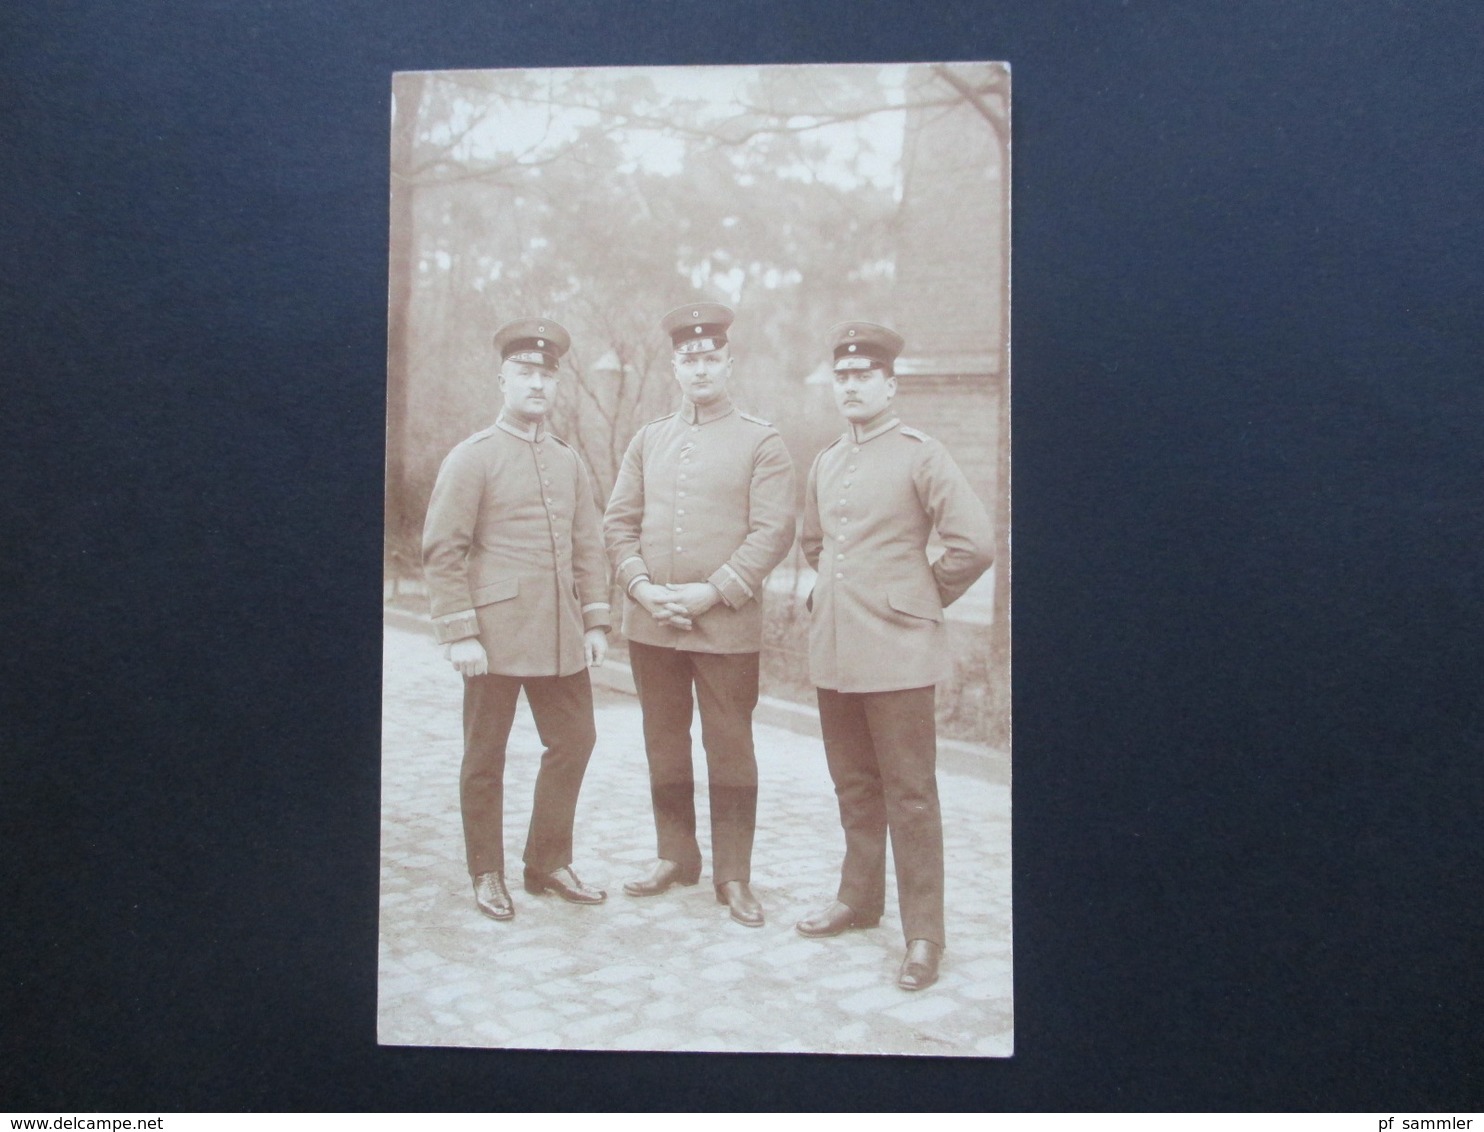 1. WK Fotos / AK 48 Stück. Soldaten / Krieg / Zivil / Uniform / Eisernes Kreuz / Orden. aus einem Nachlass. Swinemünde